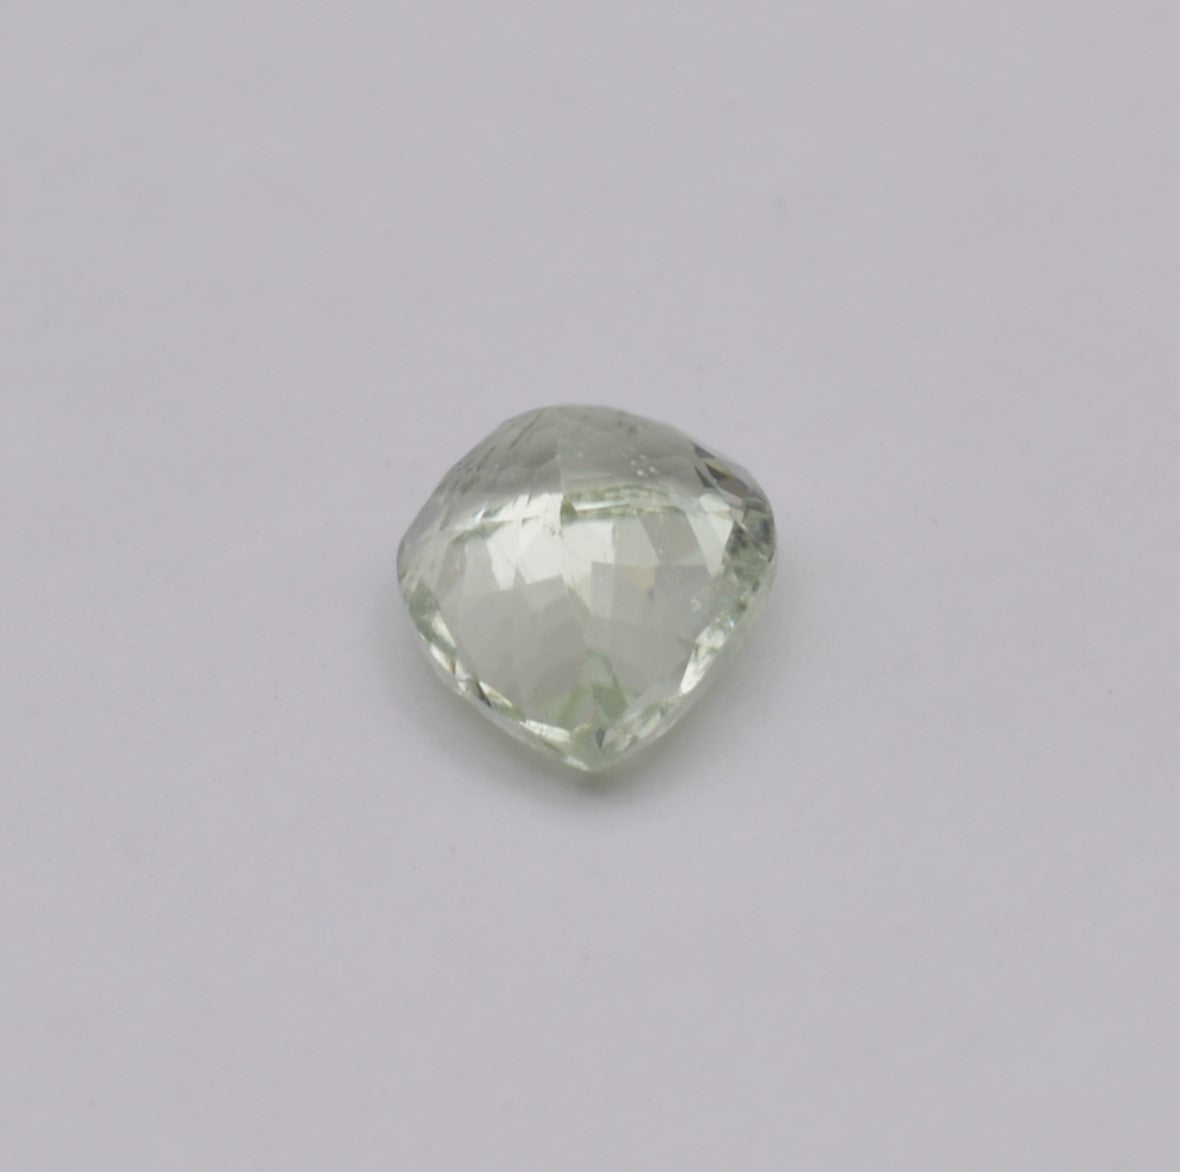 Tourmaline Verte Poire 1,23ct - pierre précieuse - gemme